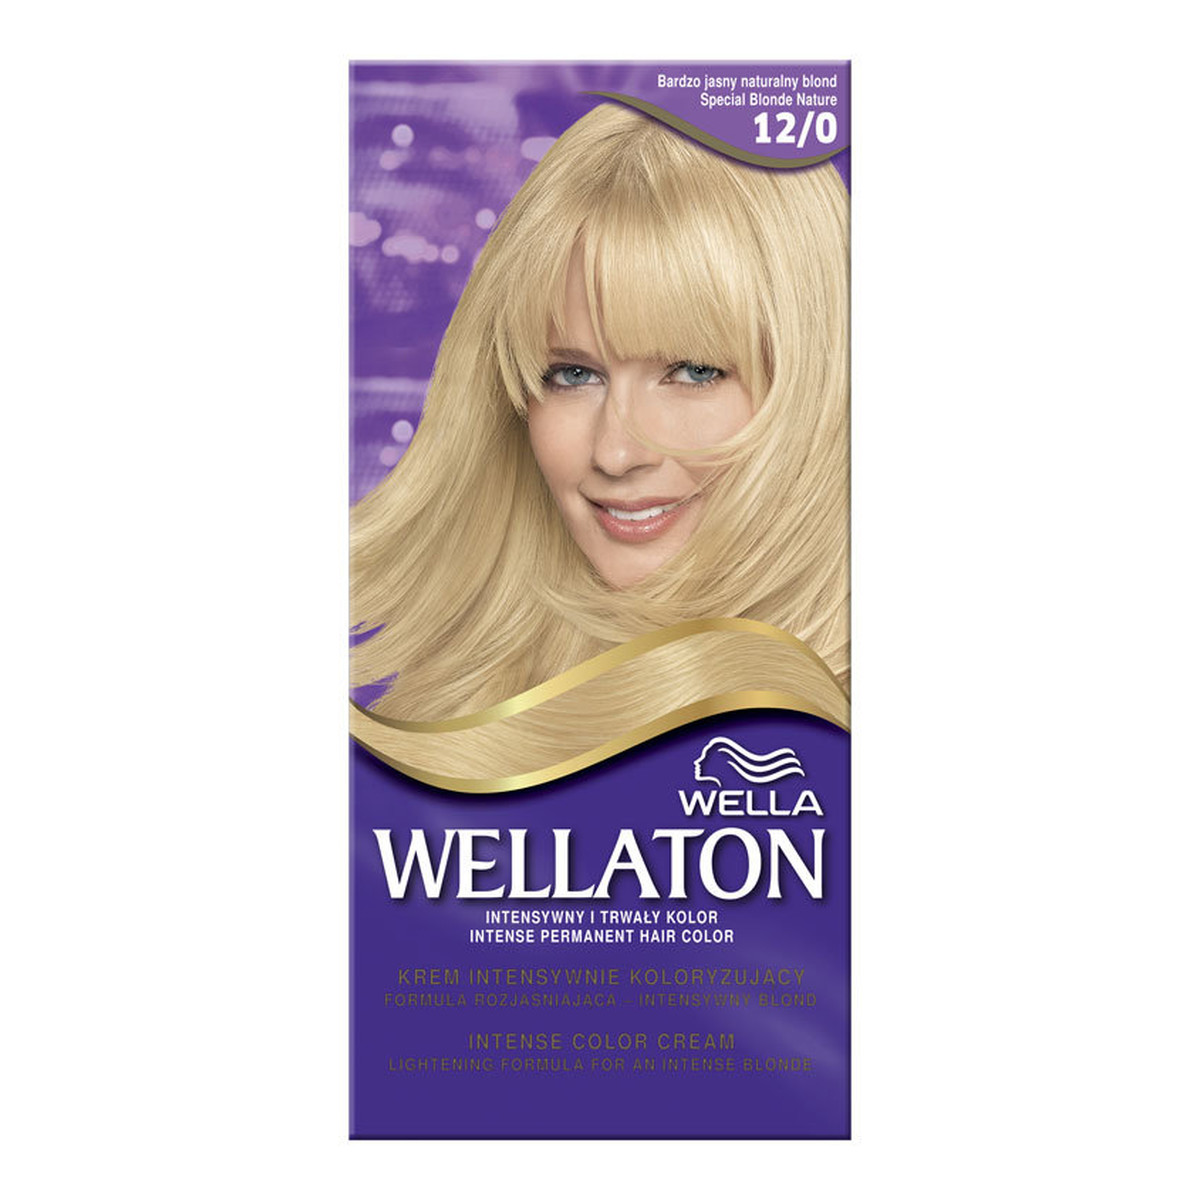 Wella Wellaton Krem Trwale Koloryzujący Bardzo Jasny Naturalny Blond (12/0) 130ml